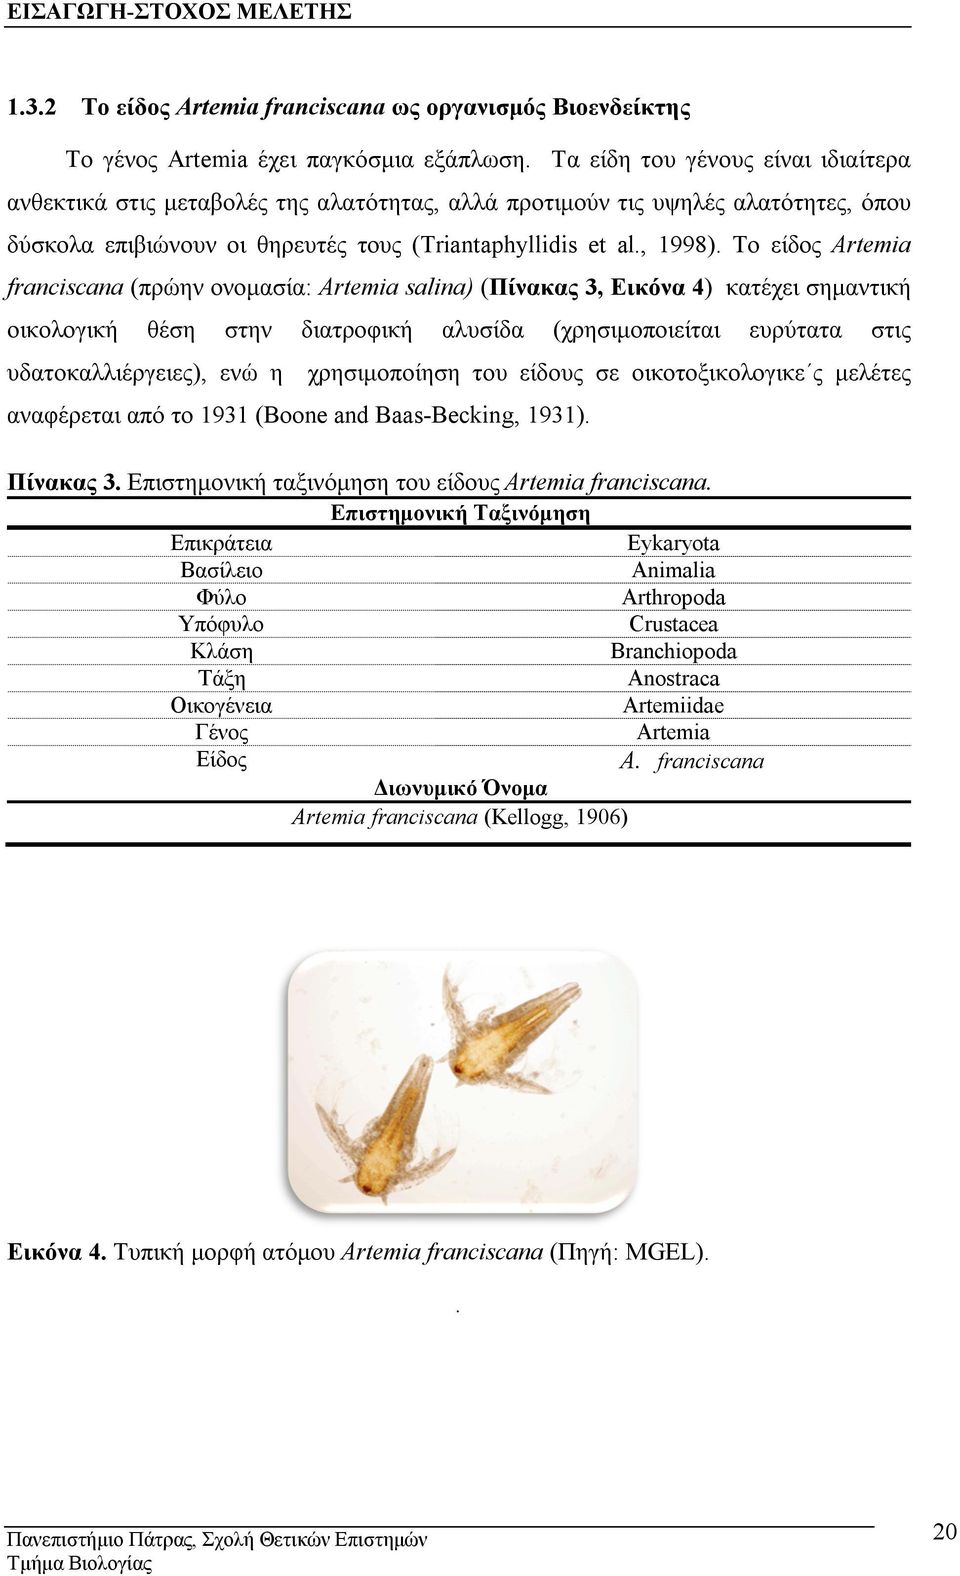 Το είδος Artemia franciscana (πρώην ονομασία: Artemia salina) (Πίνακας 3, Εικόνα 4) κατέχει σημαντική οικολογική θέση στην διατροφική αλυσίδα (χρησιμοποιείται ευρύτατα στις υδατοκαλλιέργειες), ενώ η